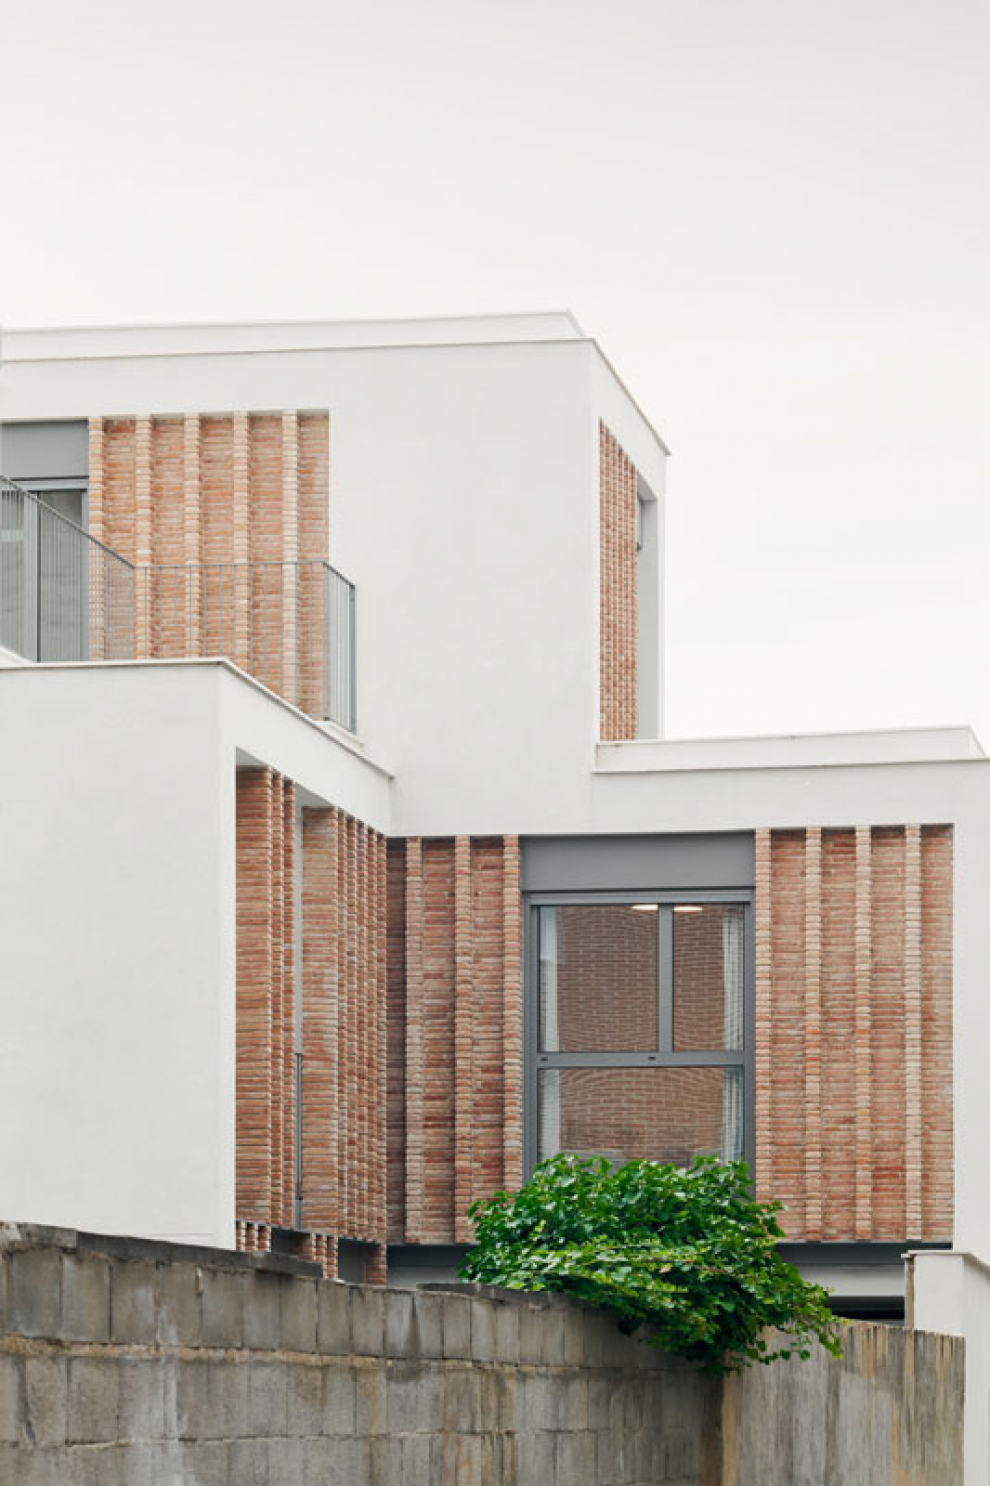 La vivienda, de DANA Arquitectos, consiguió el accésit al mejor edificio residencial de Aragón en 2020 en los Premios García Mercadal